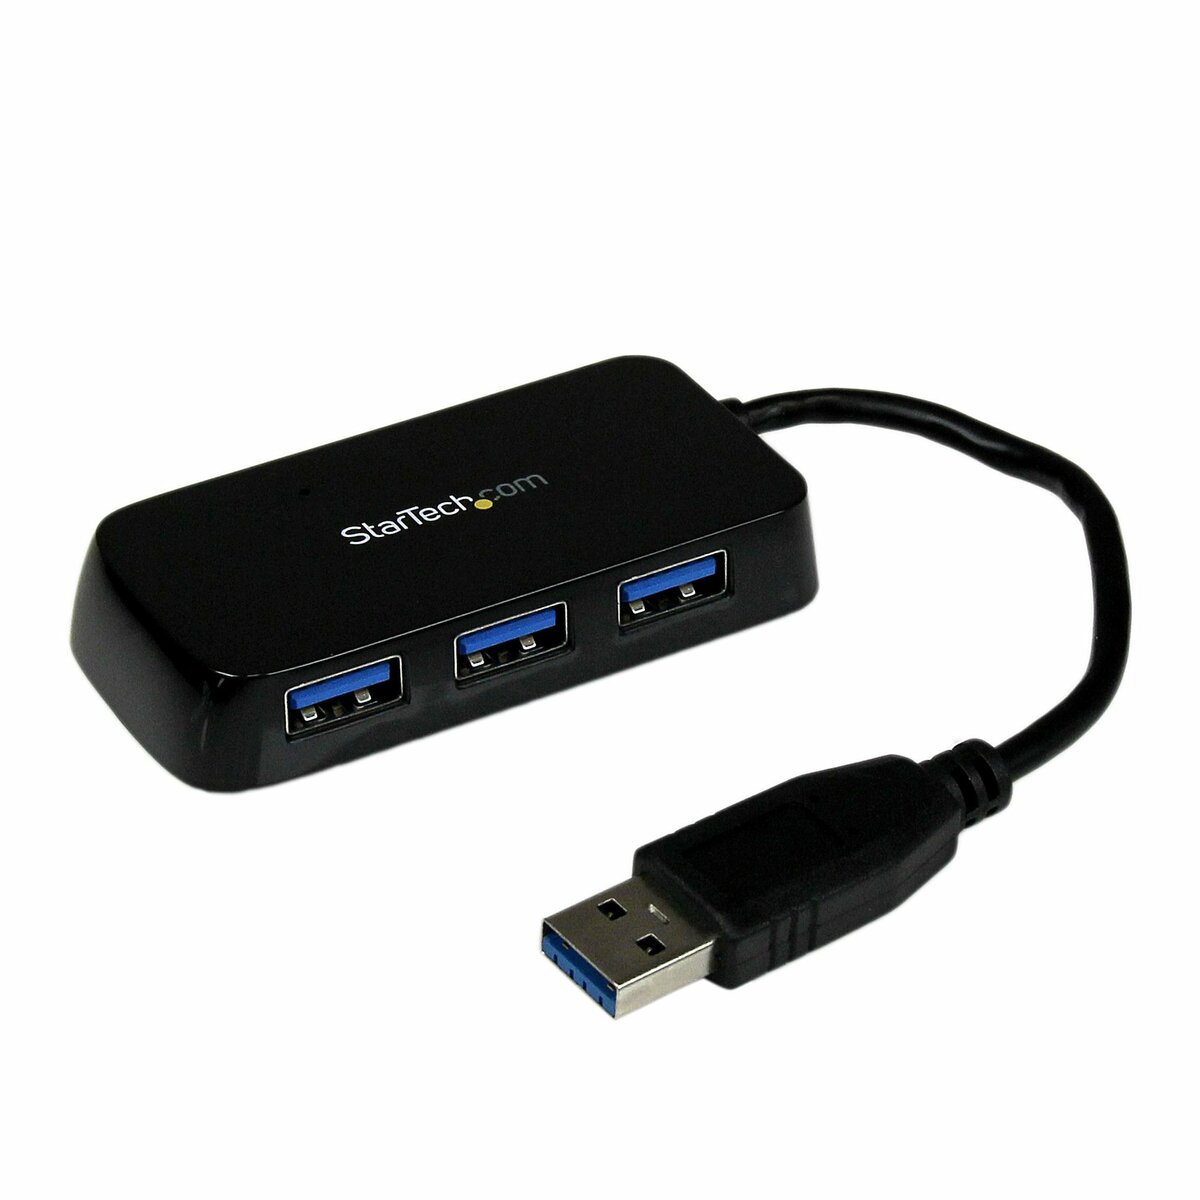 Ryd op pålægge overrasket StarTech.com 4-Port USB 3.0 SuperSpeed Hub - Portable Mini Multiport USB  Travel Dock - USB Extender Black for Business PC/Mac, laptops (ST4300MINU3B)